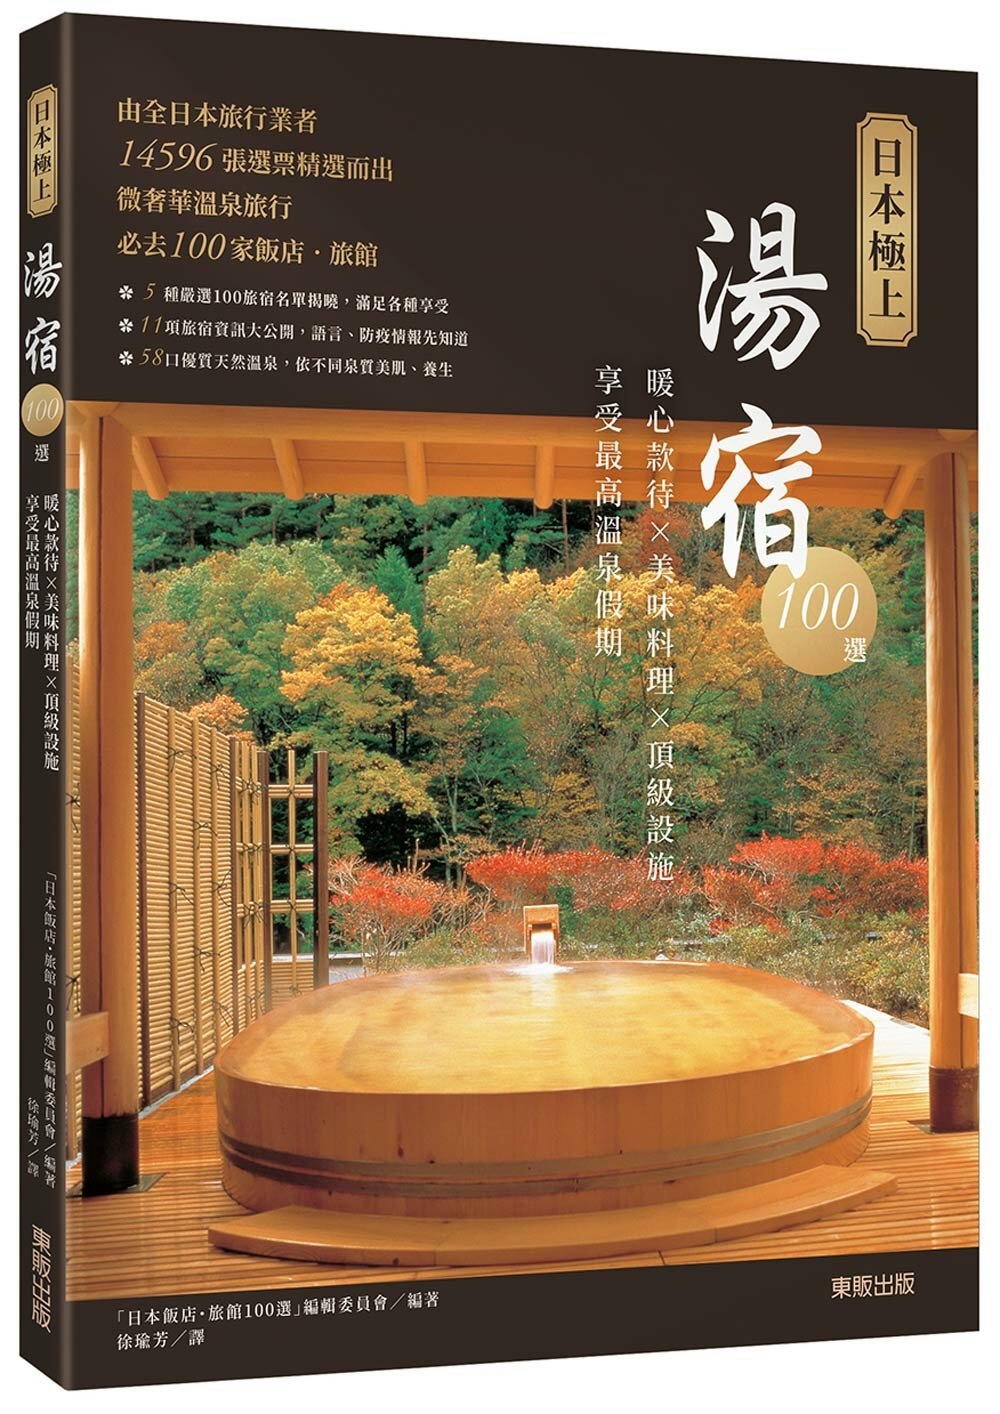 日本極上湯宿100選：暖心款待×美味料理×頂級設施，享受最高...